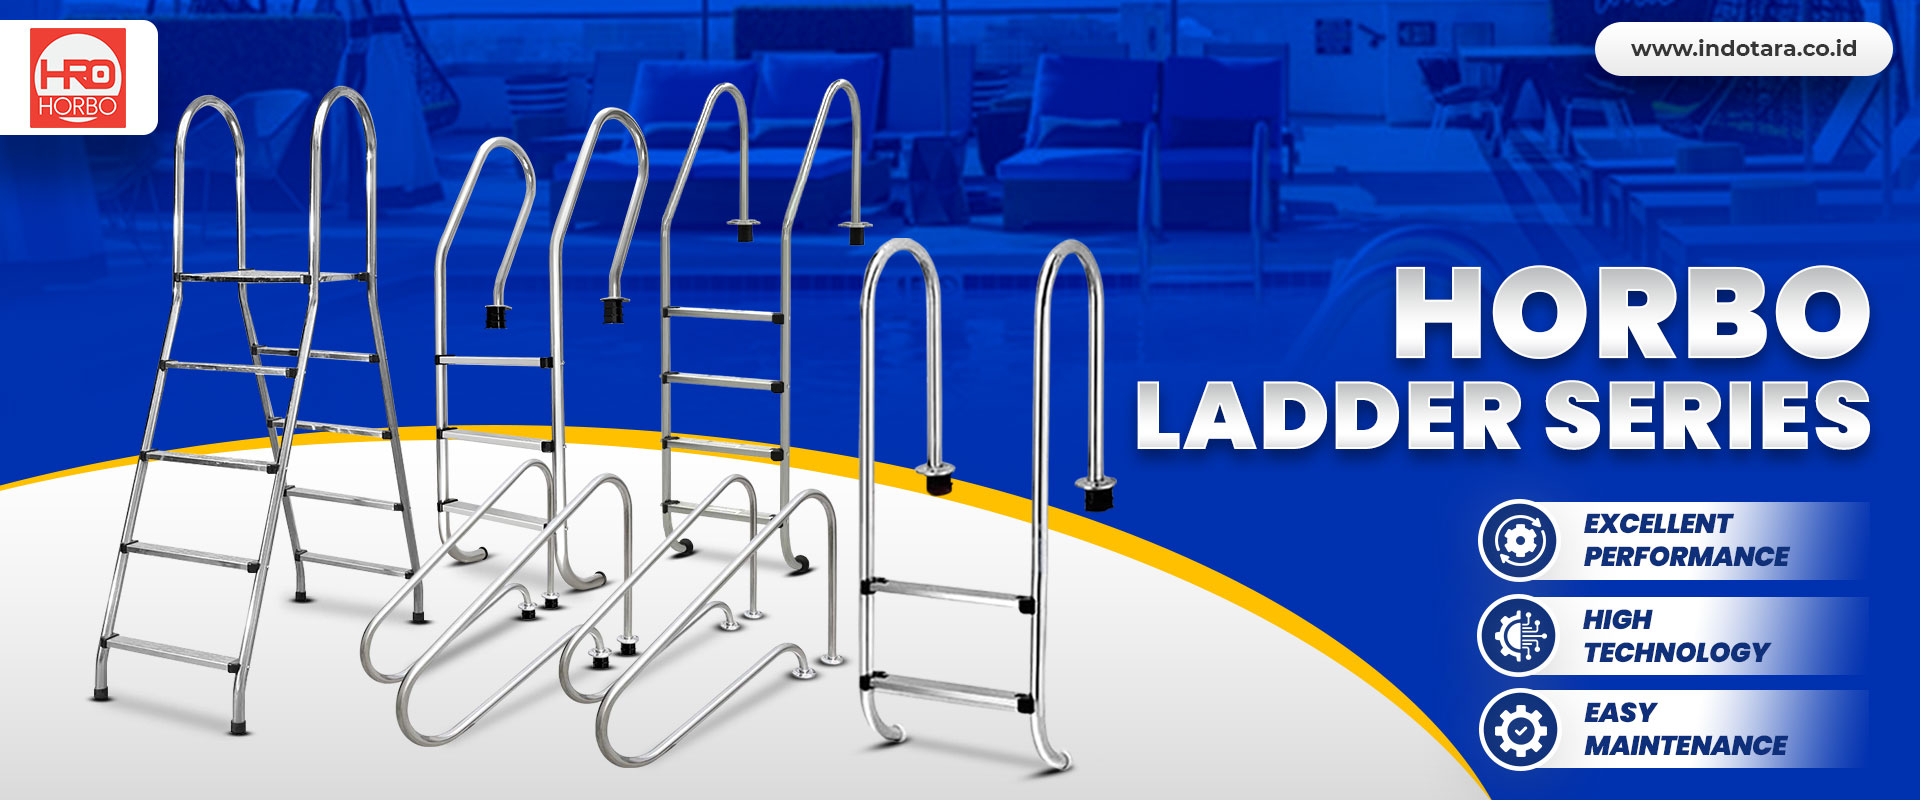 Horbo Ladder Series